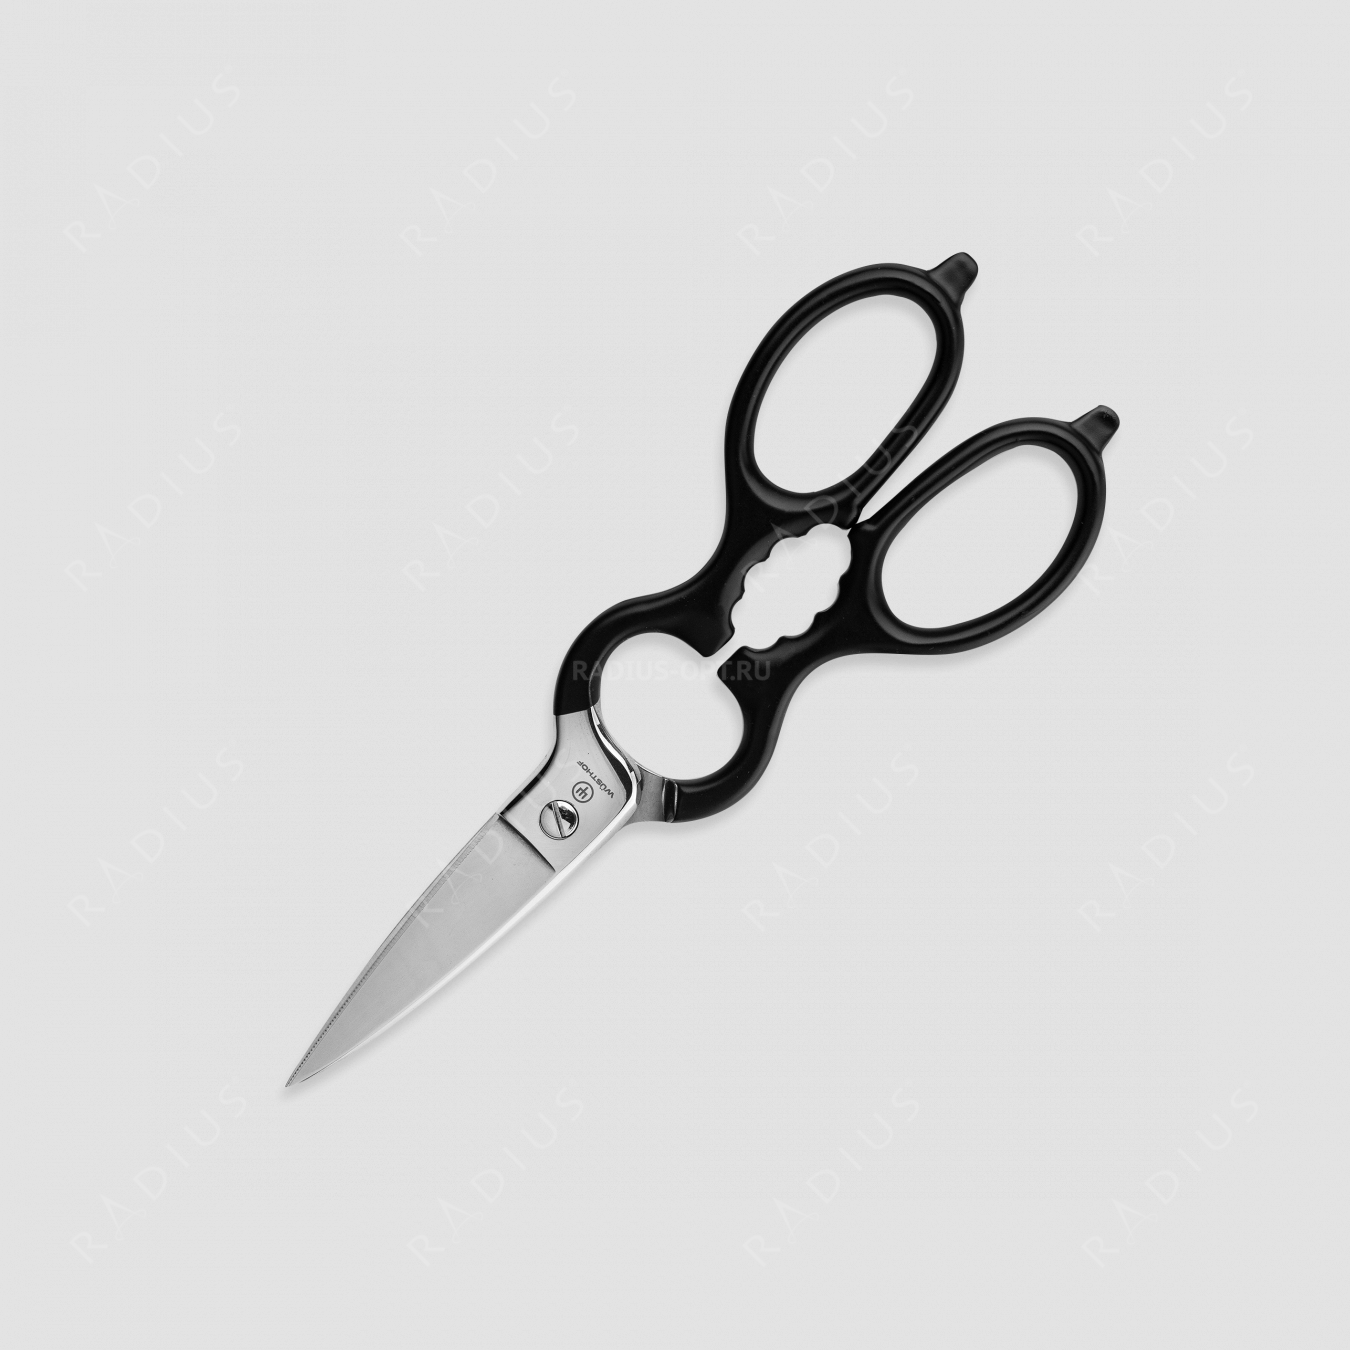 Ножницы кухонные 20 см, нержавеющая сталь, пластиковые ручки, серия Professional tools, WUESTHOF, Золинген, Германия